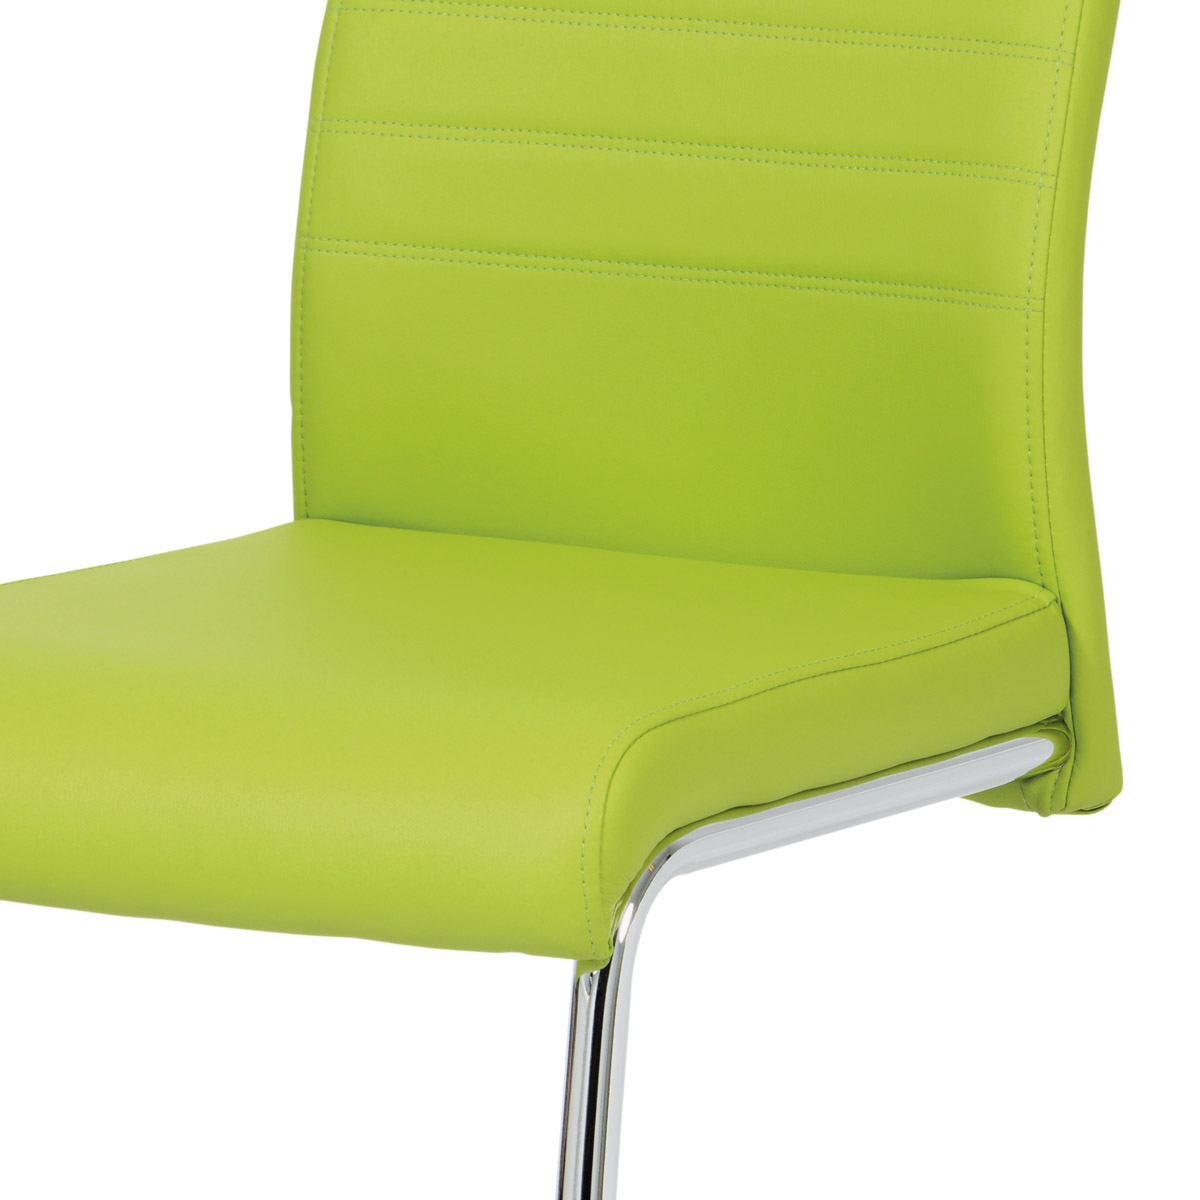 Jídelní židle koženka zelená / chrom